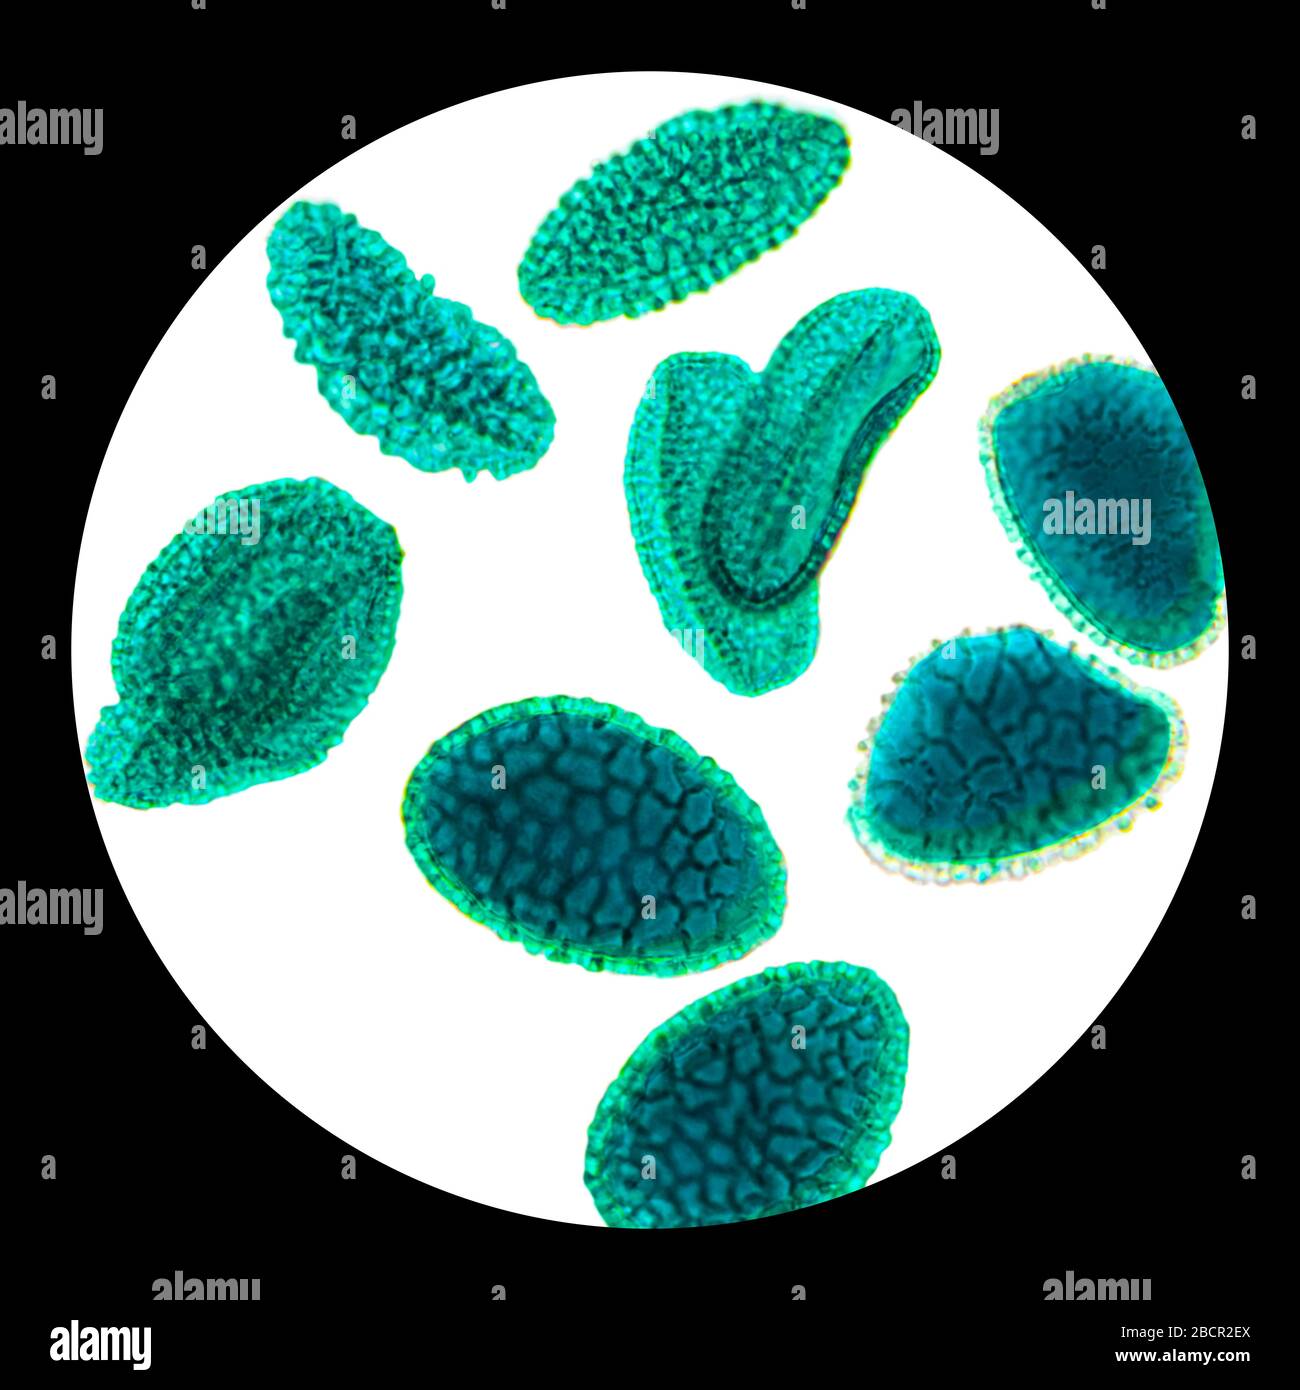 Pollenkörner unter dem Lichtmikroskop. Körner von Pollen führen häufig zu allergischen Reaktionen auf die Antigene. Stockfoto